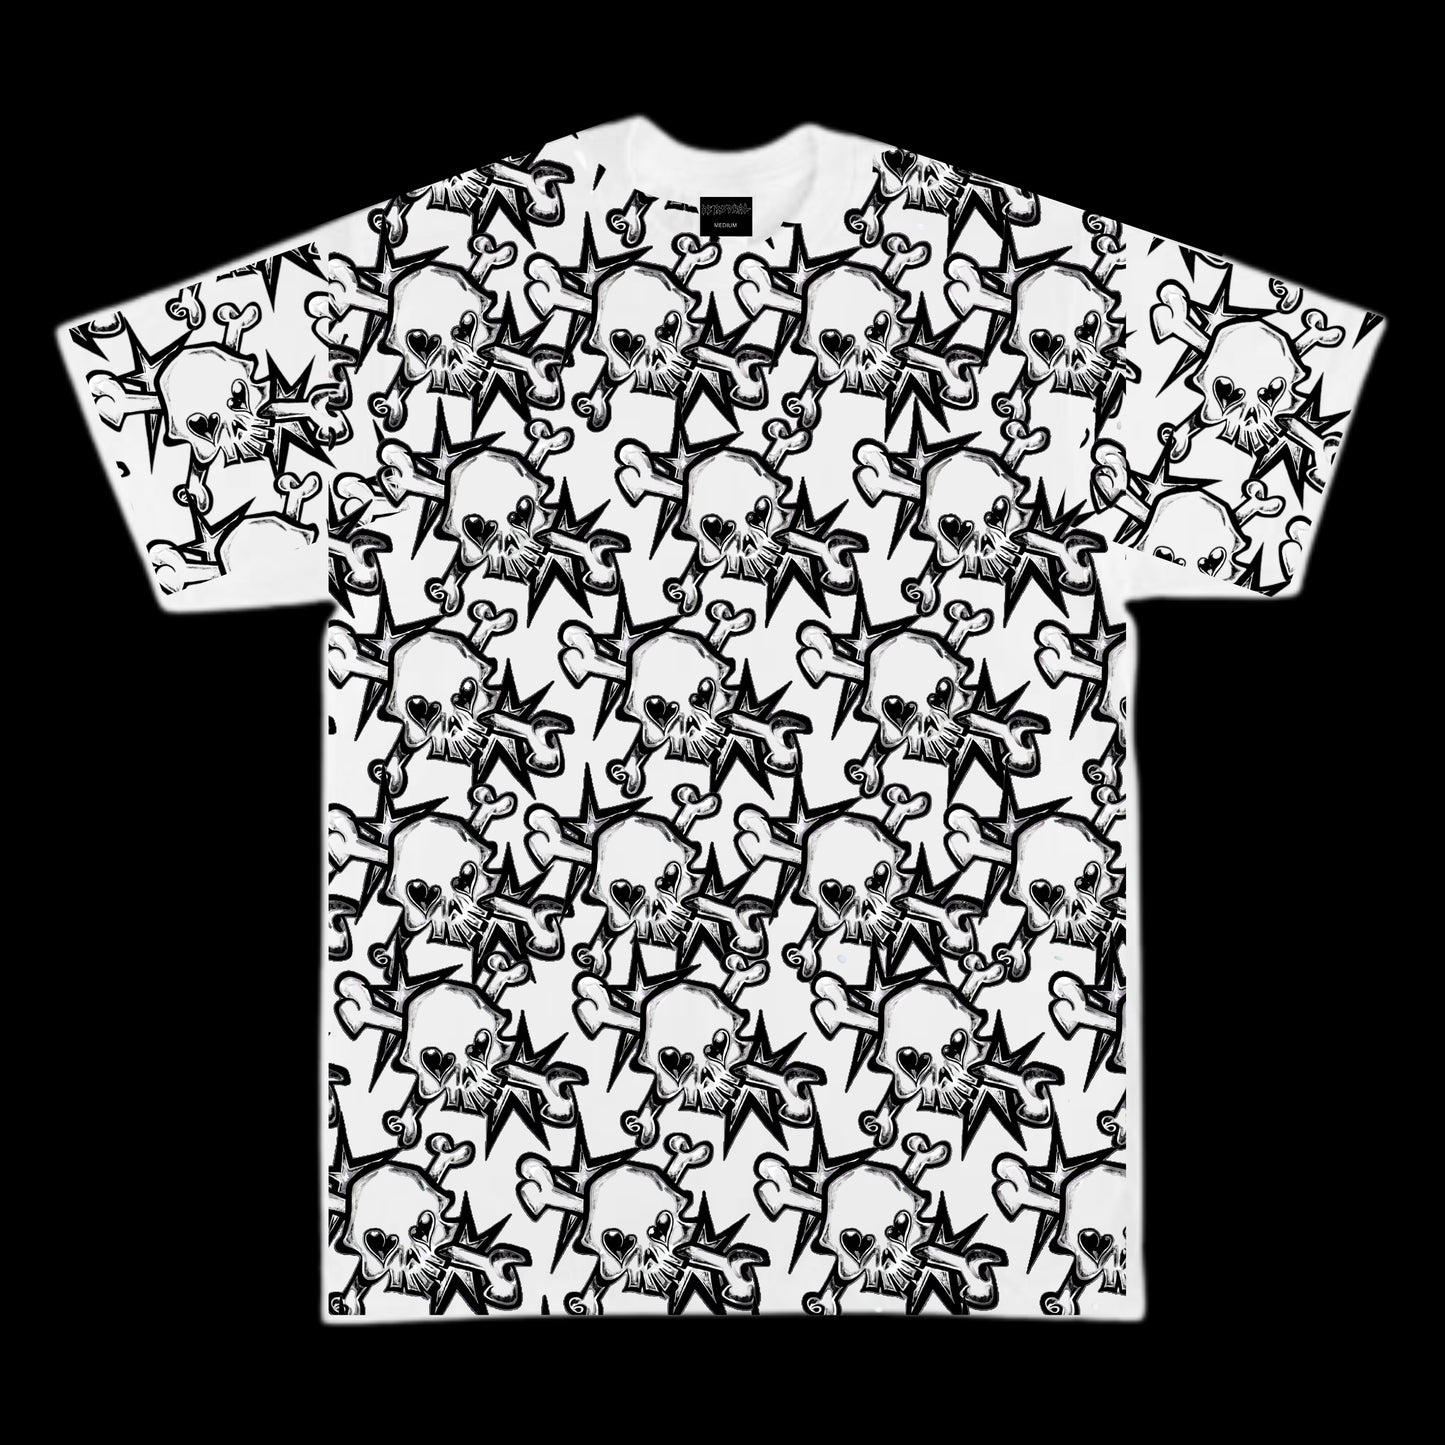 SkullStar All Over Print T Shirt White